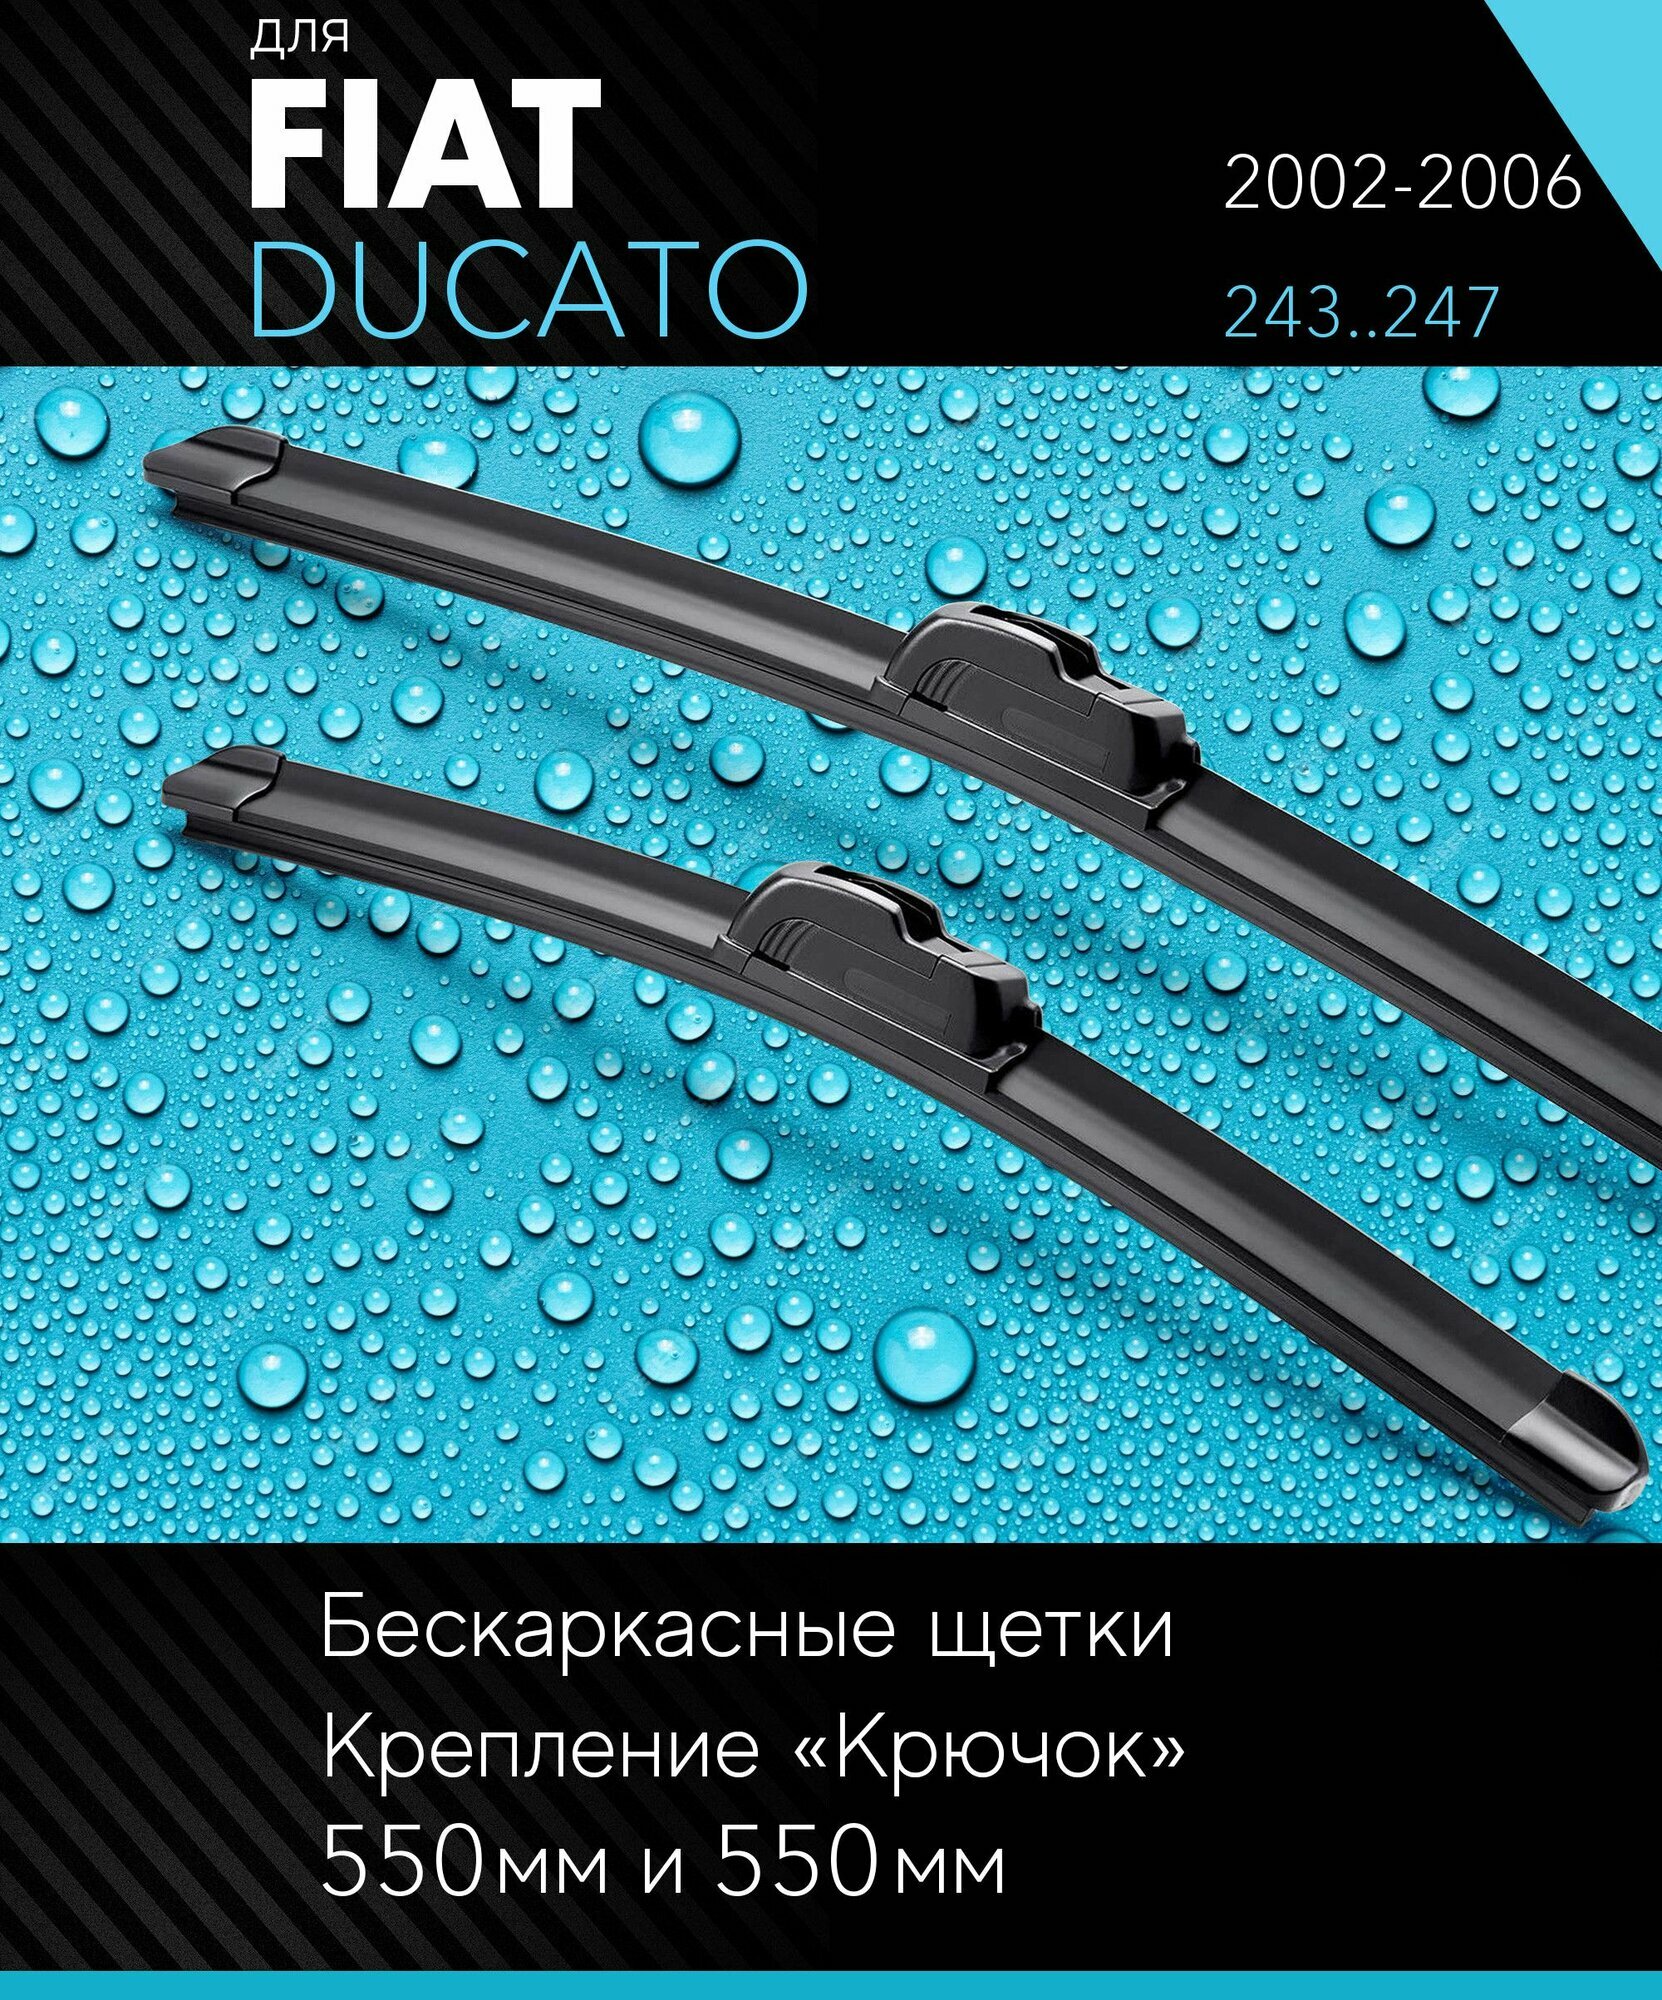 2 щетки стеклоочистителя 550 550 мм на Фиат Дукато 2002-2006, бескаркасные дворники комплект для Fiat Ducato (243.247) - Autoled